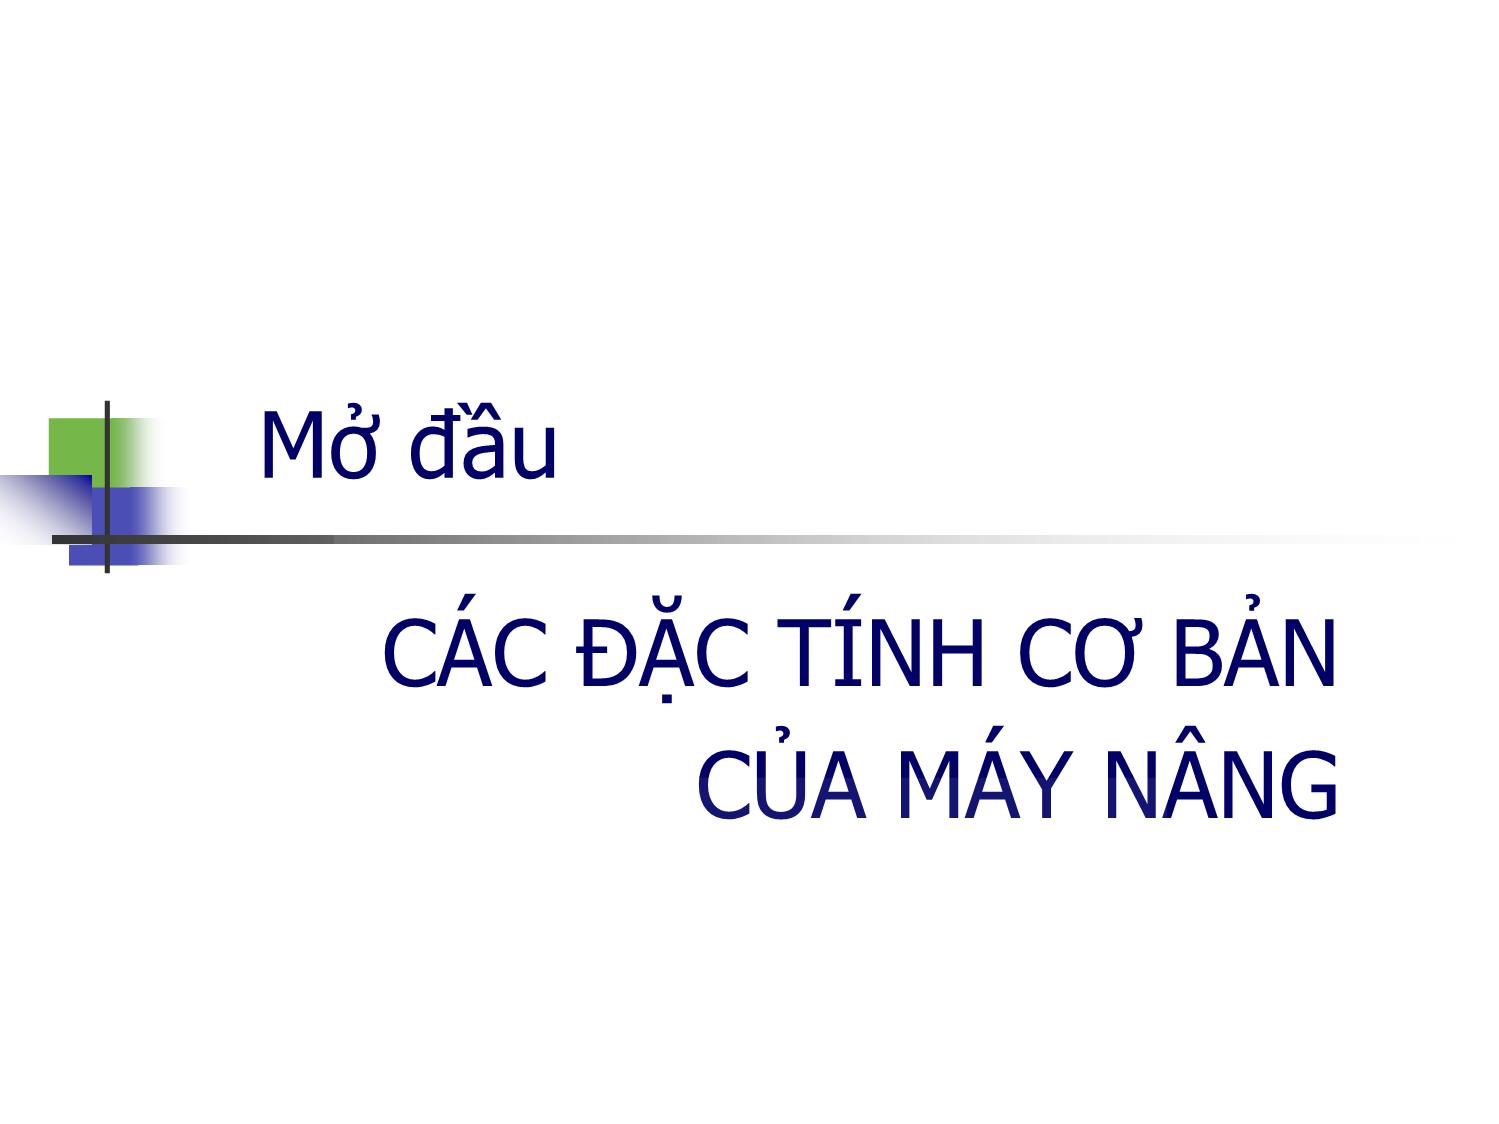 Bài giảng Máy nâng chuyển - Chương 1: Các đặc tính cơ bản của máy nâng - Trịnh Đồng Tính trang 1